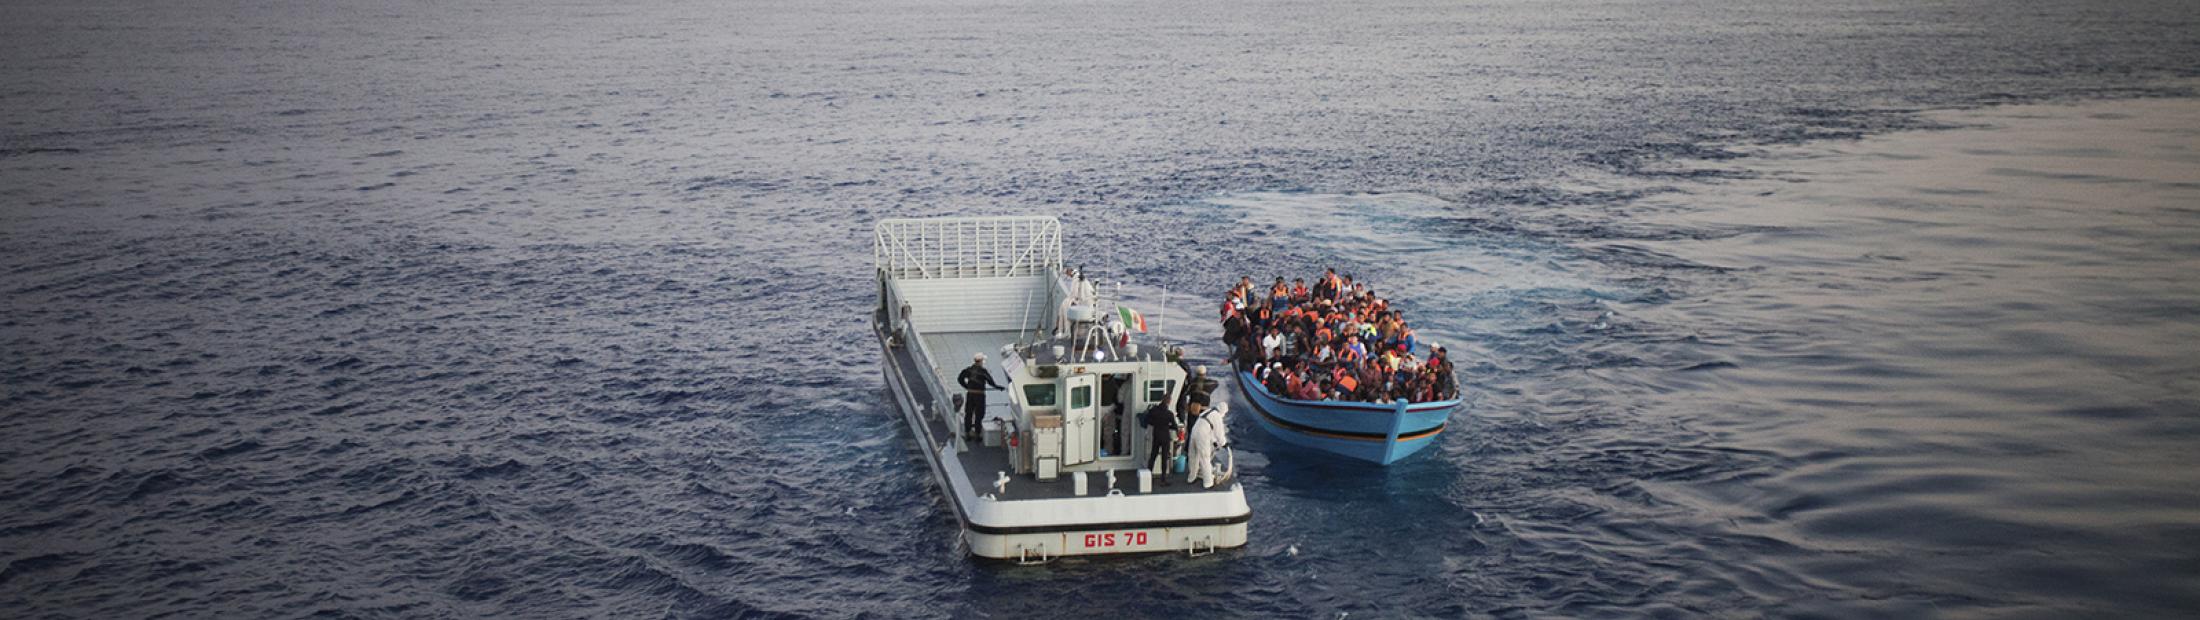 ACNUR pide medidas urgentes ante la inaceptable situación de degradación en Lampedusa